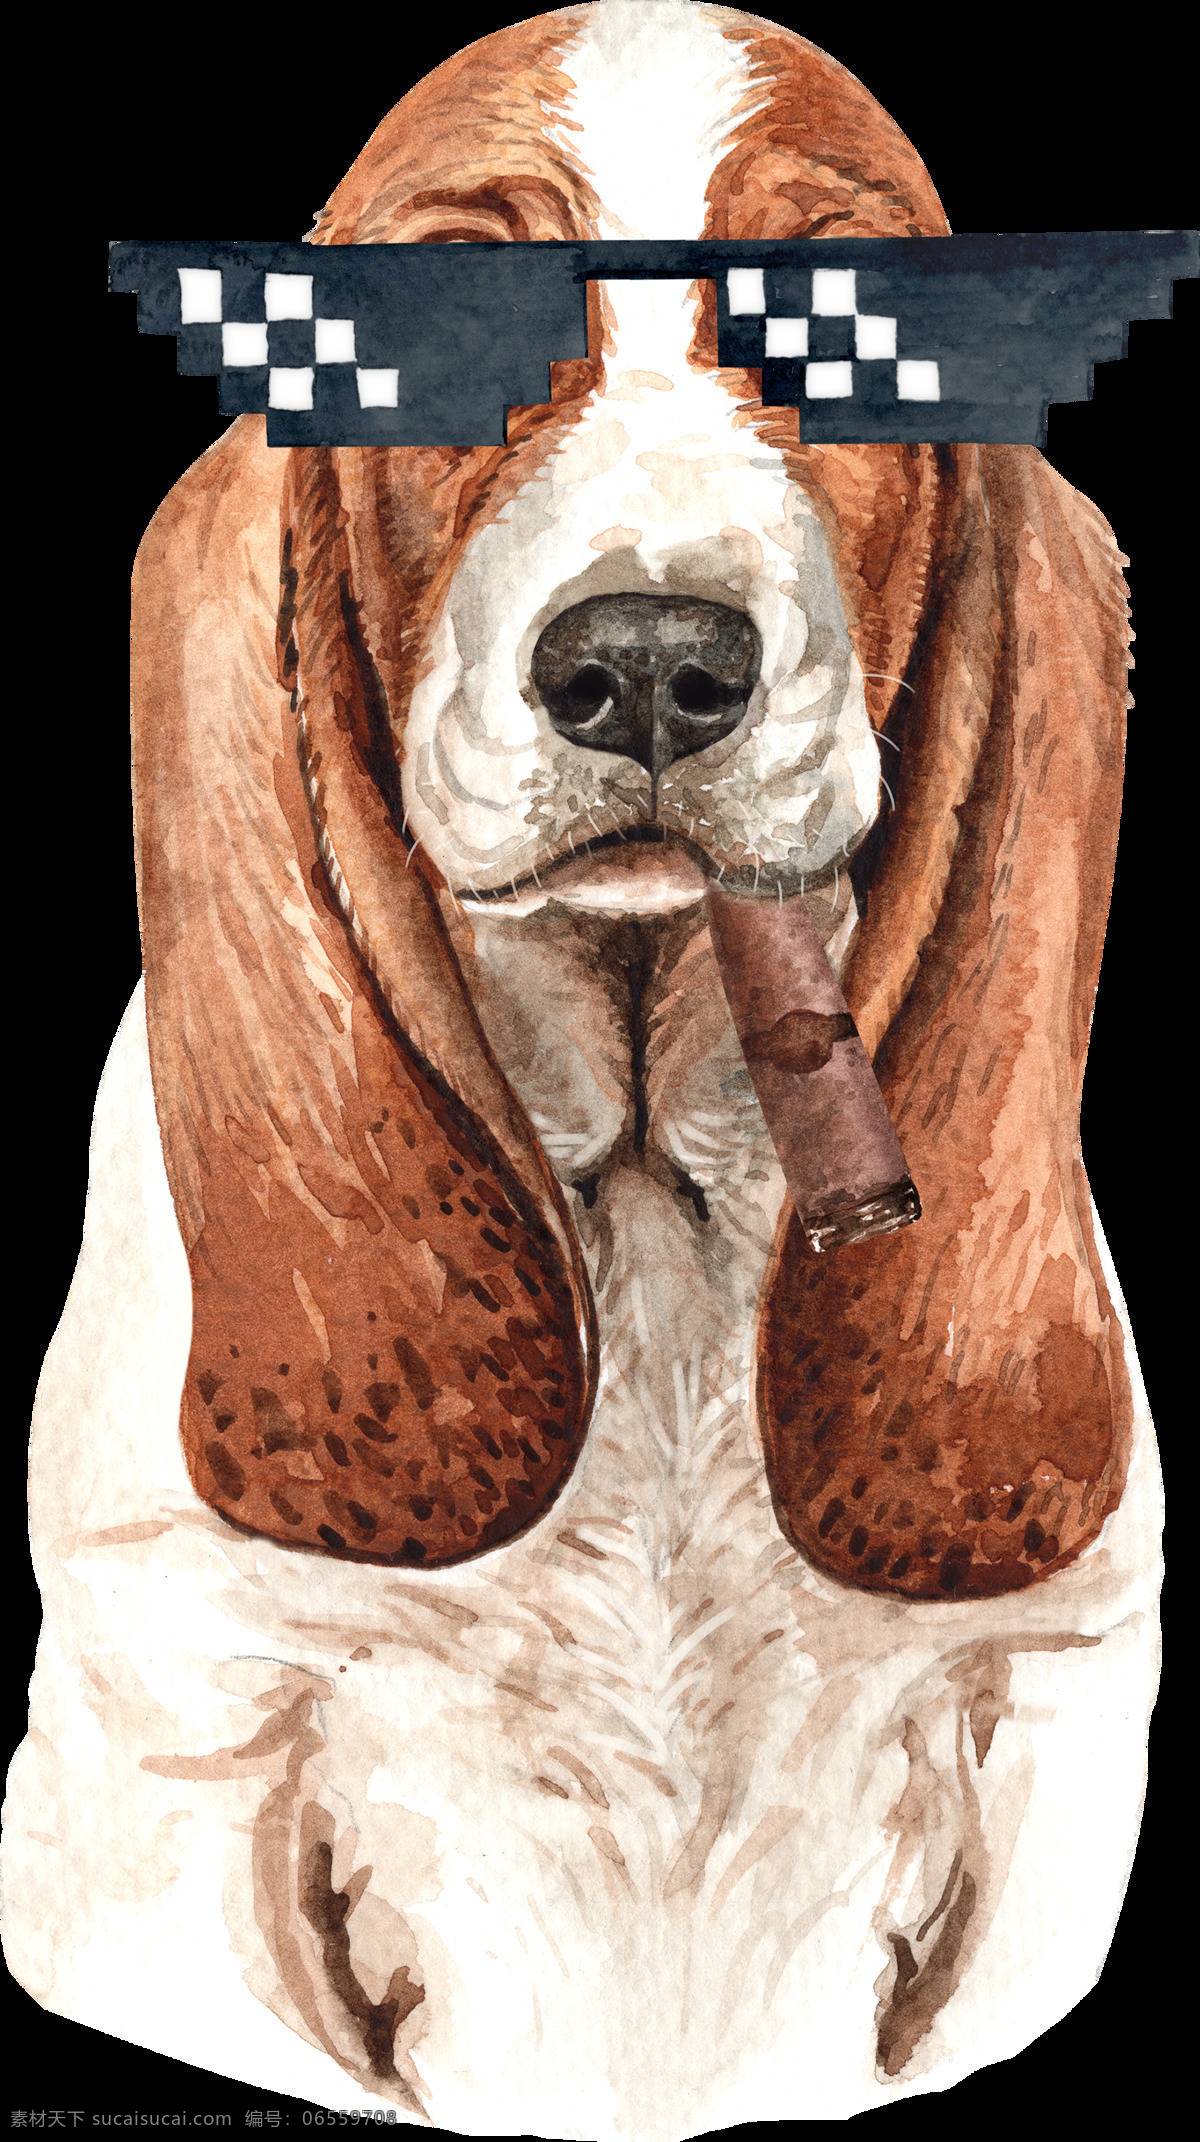 水彩 绘画 可爱 小狗 水彩绘画 涂鸦 呆萌可爱 小动物 狗 犬 创意绘画 图案设计 表情包 外国犬头像 田园犬 博士帽 帽子 装饰画 墨镜 文化艺术 绘画书法